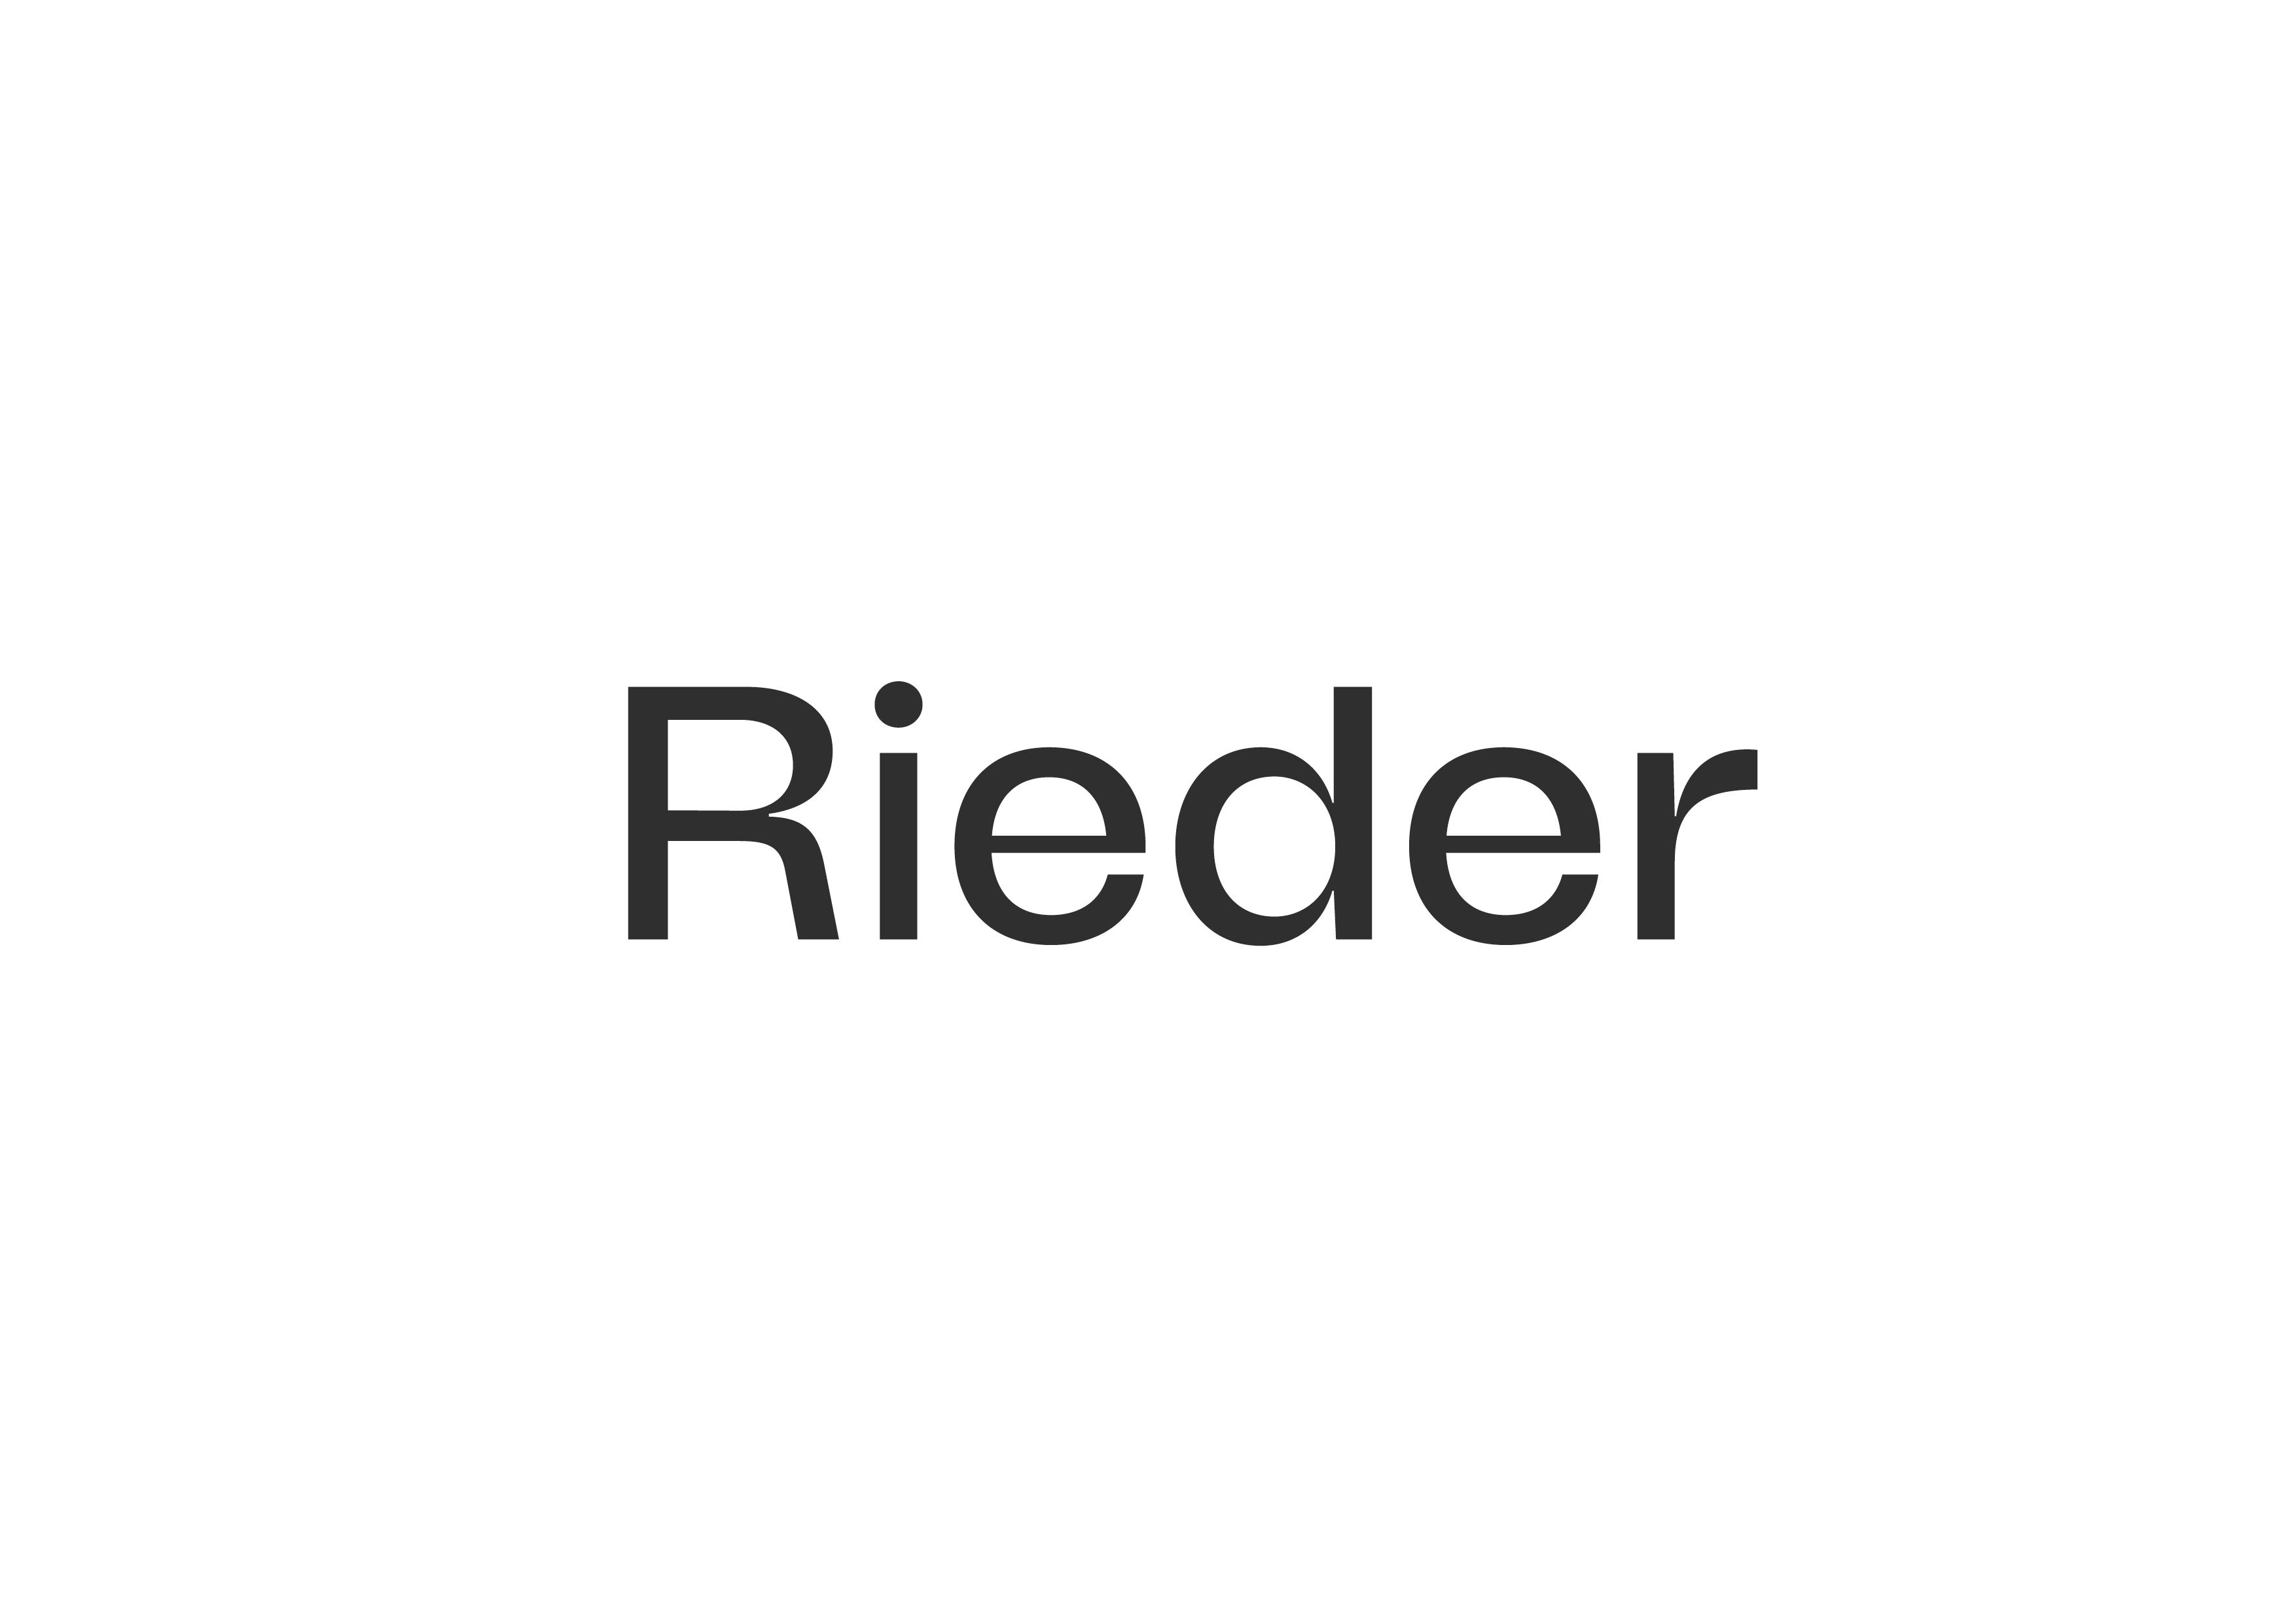 www.rieder.cc/en/